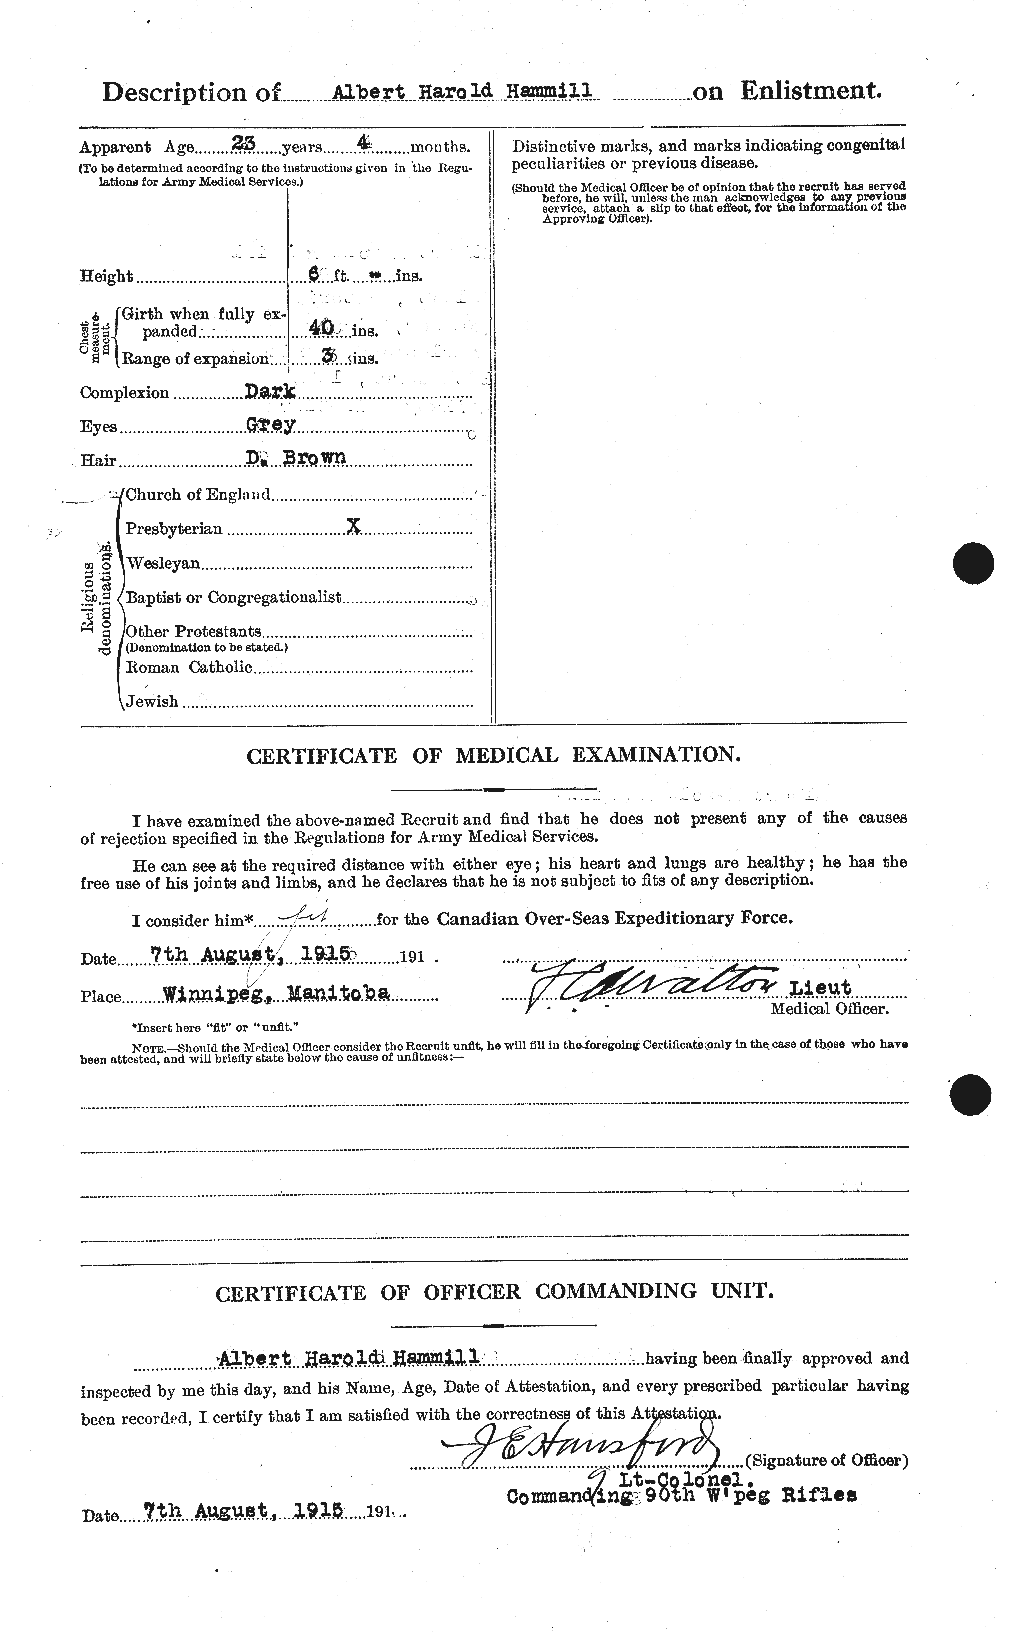 Dossiers du Personnel de la Première Guerre mondiale - CEC 376297b